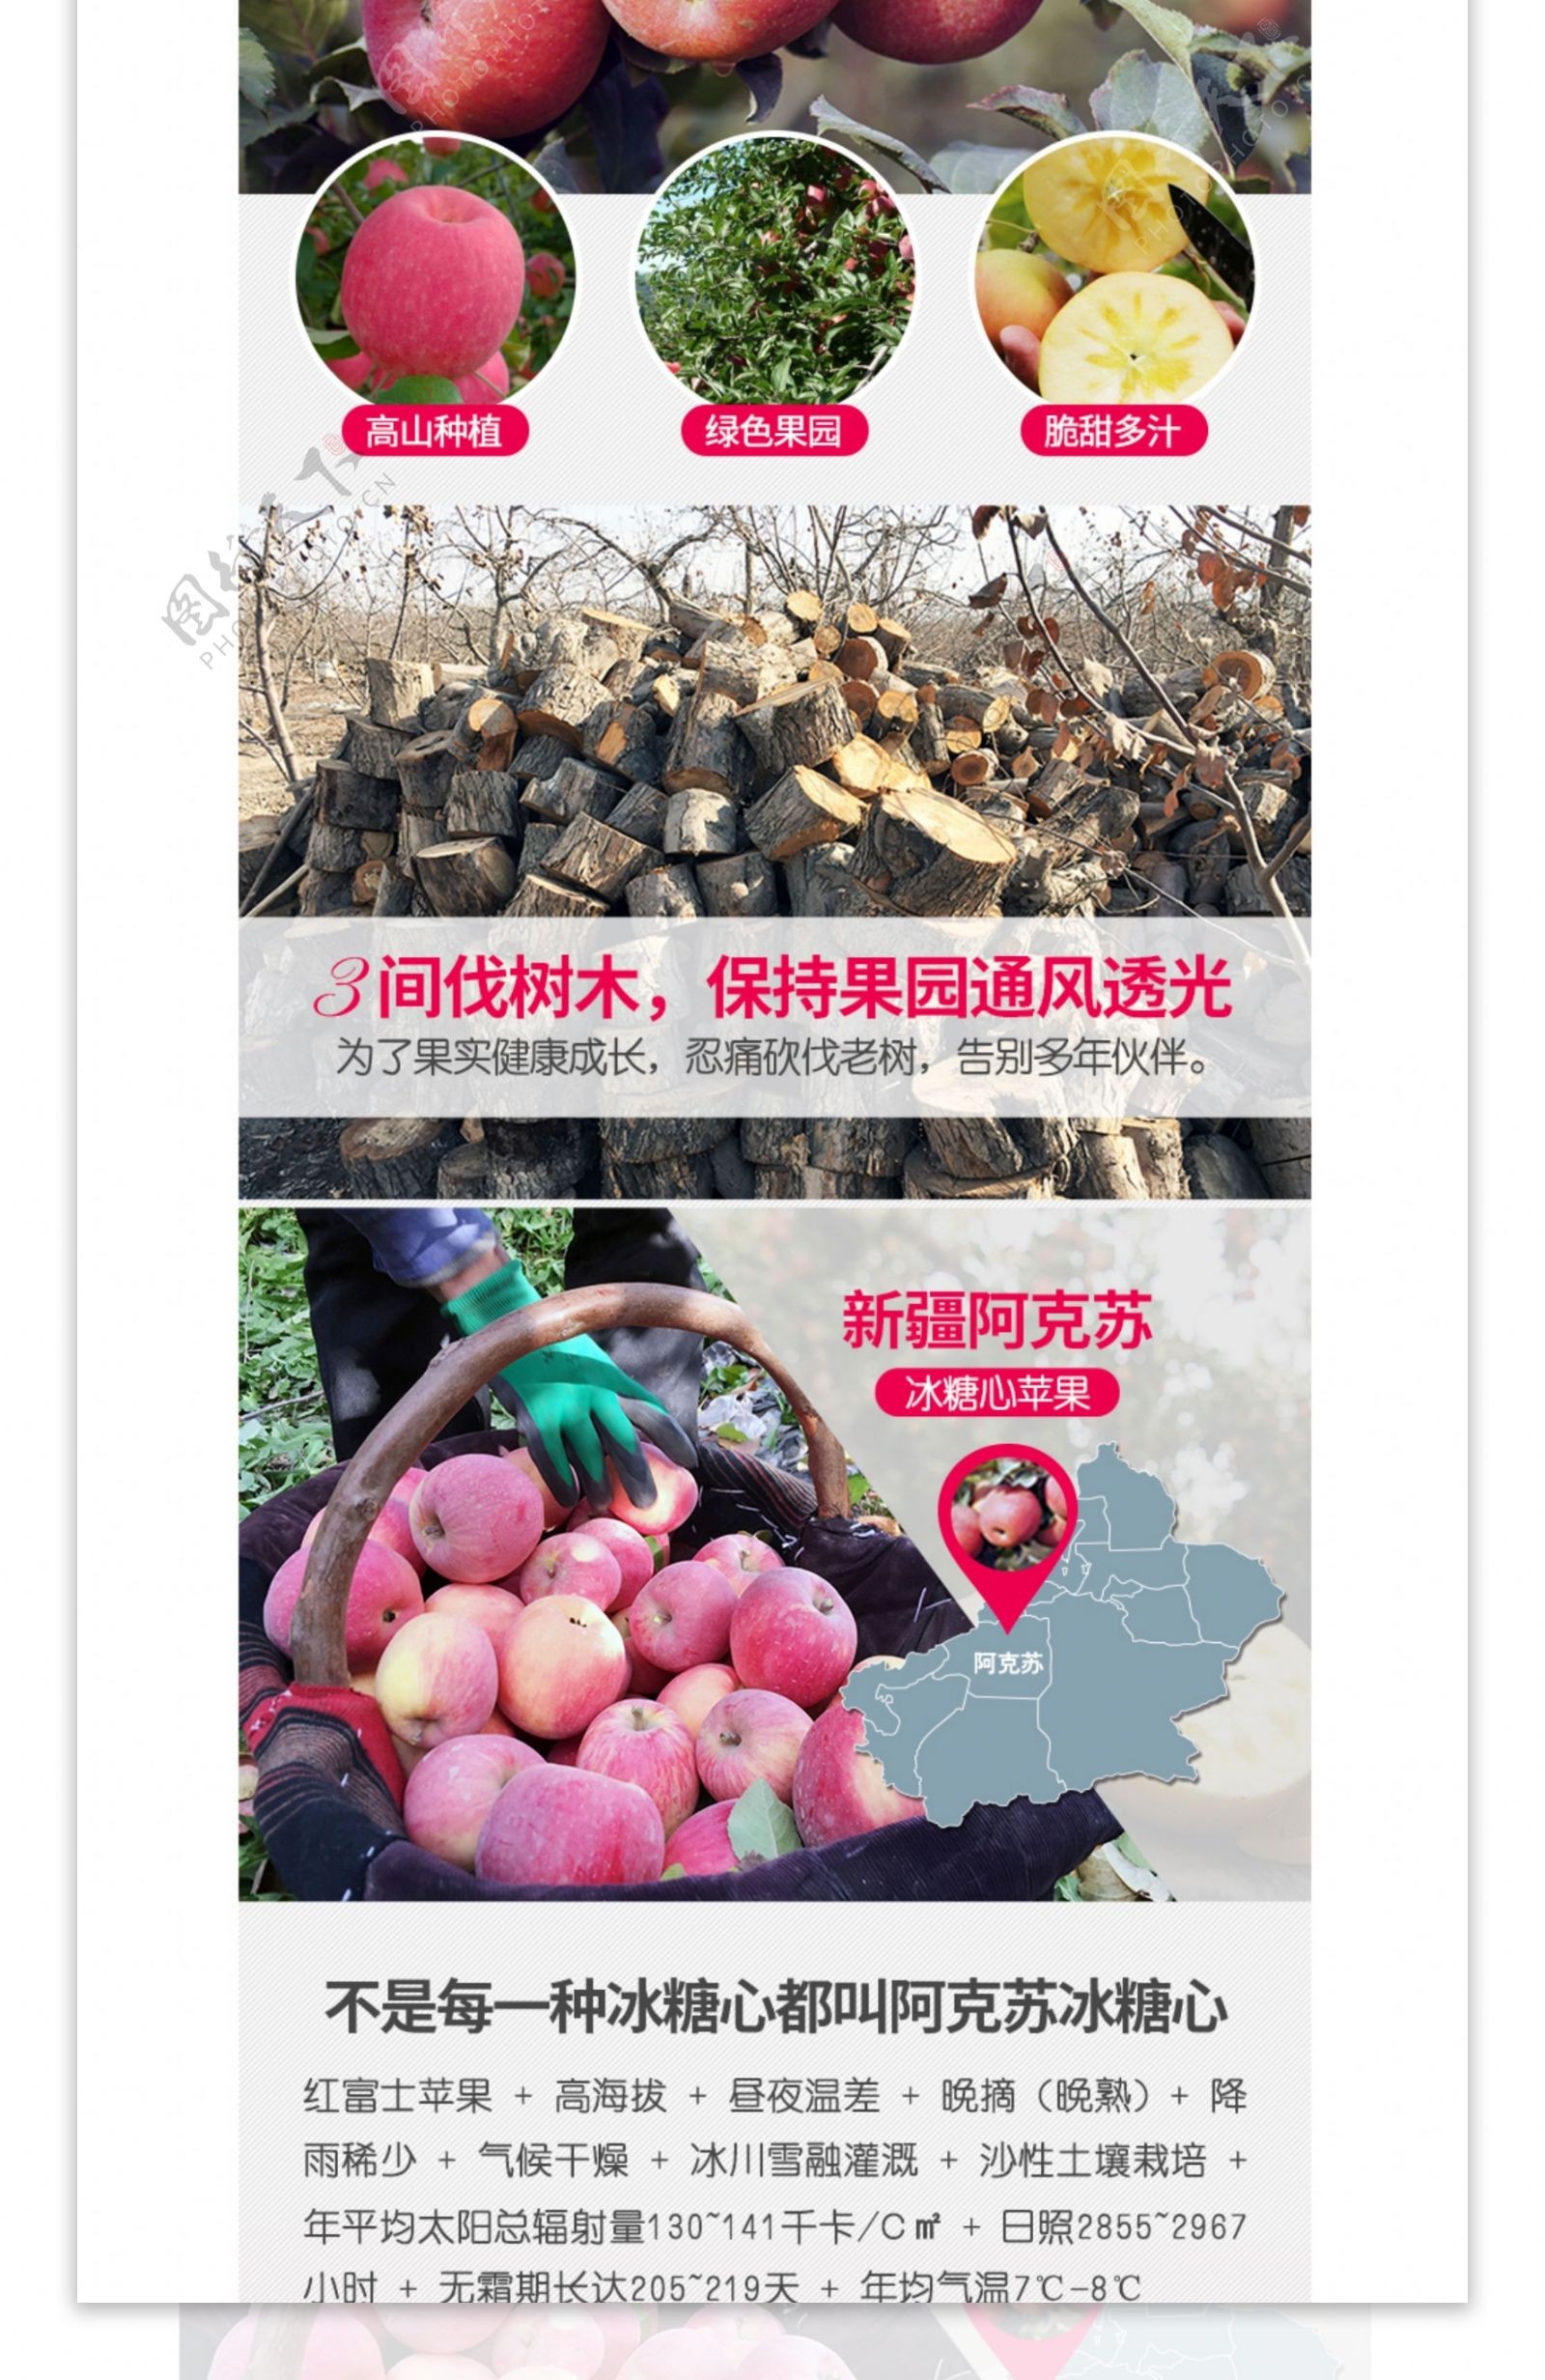 电商淘宝食品水果新疆阿克苏新鲜苹果详情页